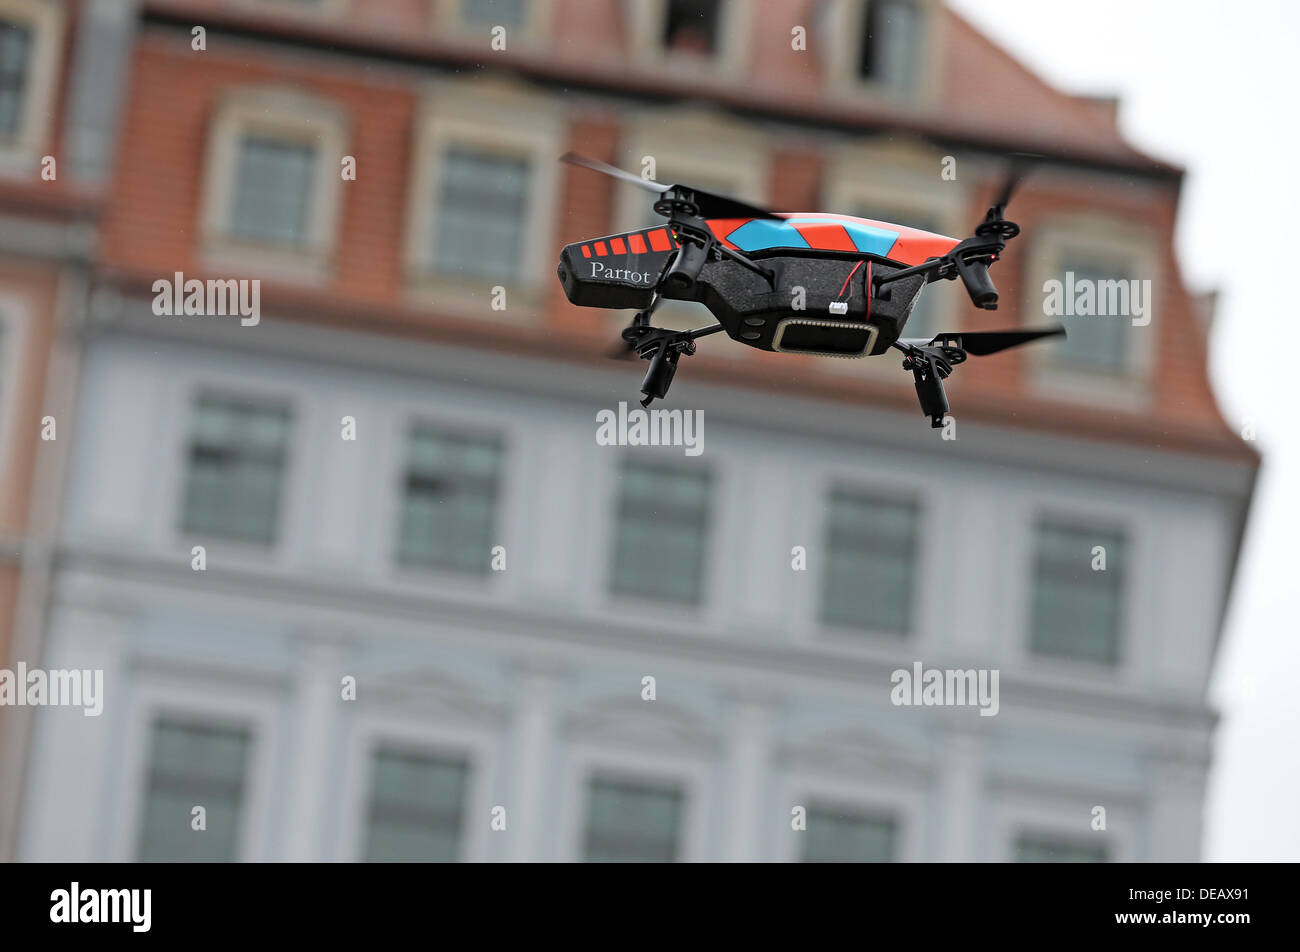 Un drone vola attraverso l'aria durante il pre-elettorale in caso di Dresda, in Germania, il 15 settembre 2013. Foto: JAN WOITAS Foto Stock